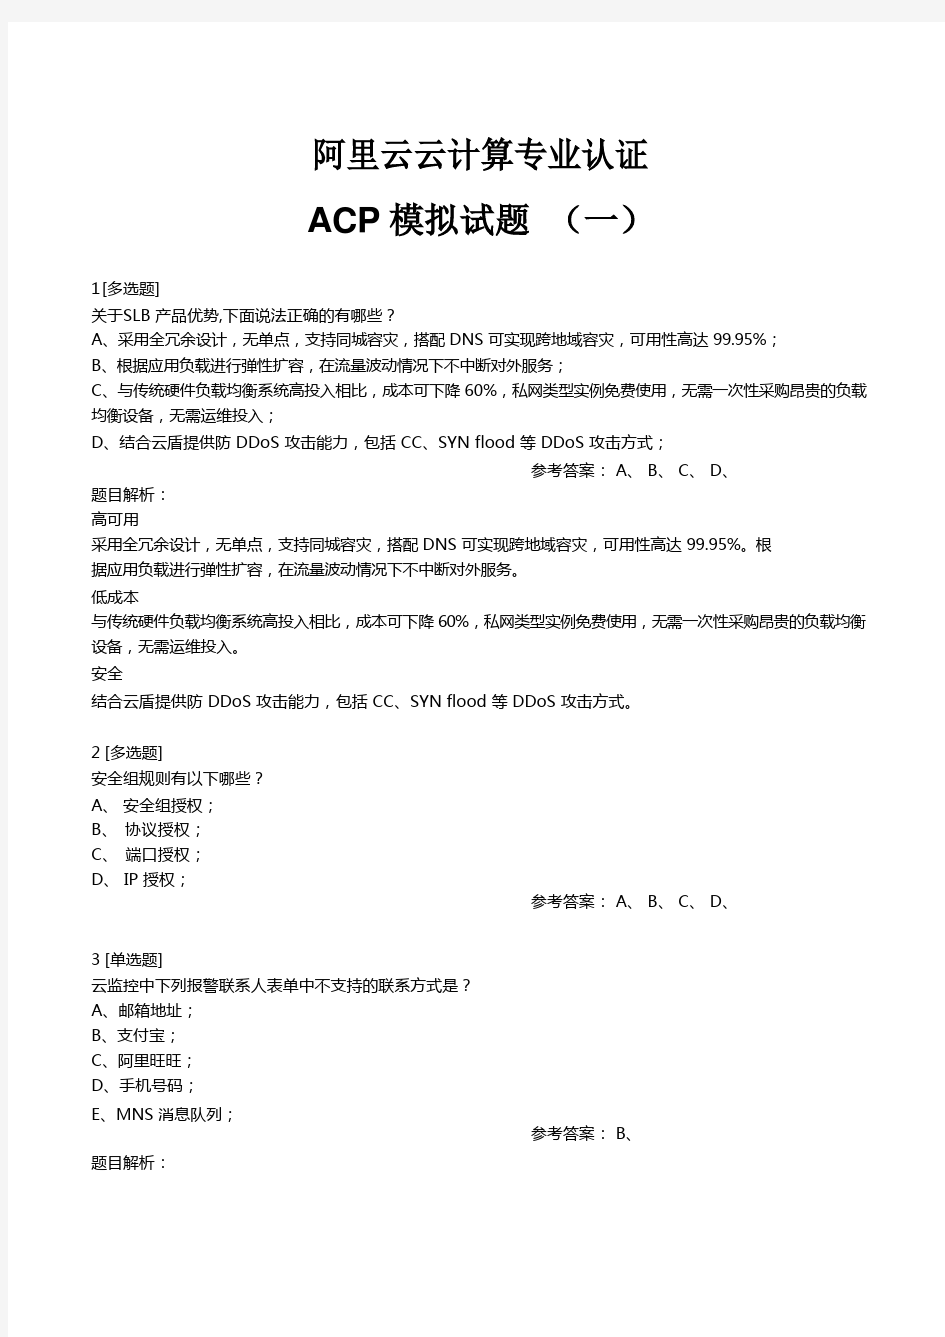 阿里云云计算专业认证考试ACP模拟题一